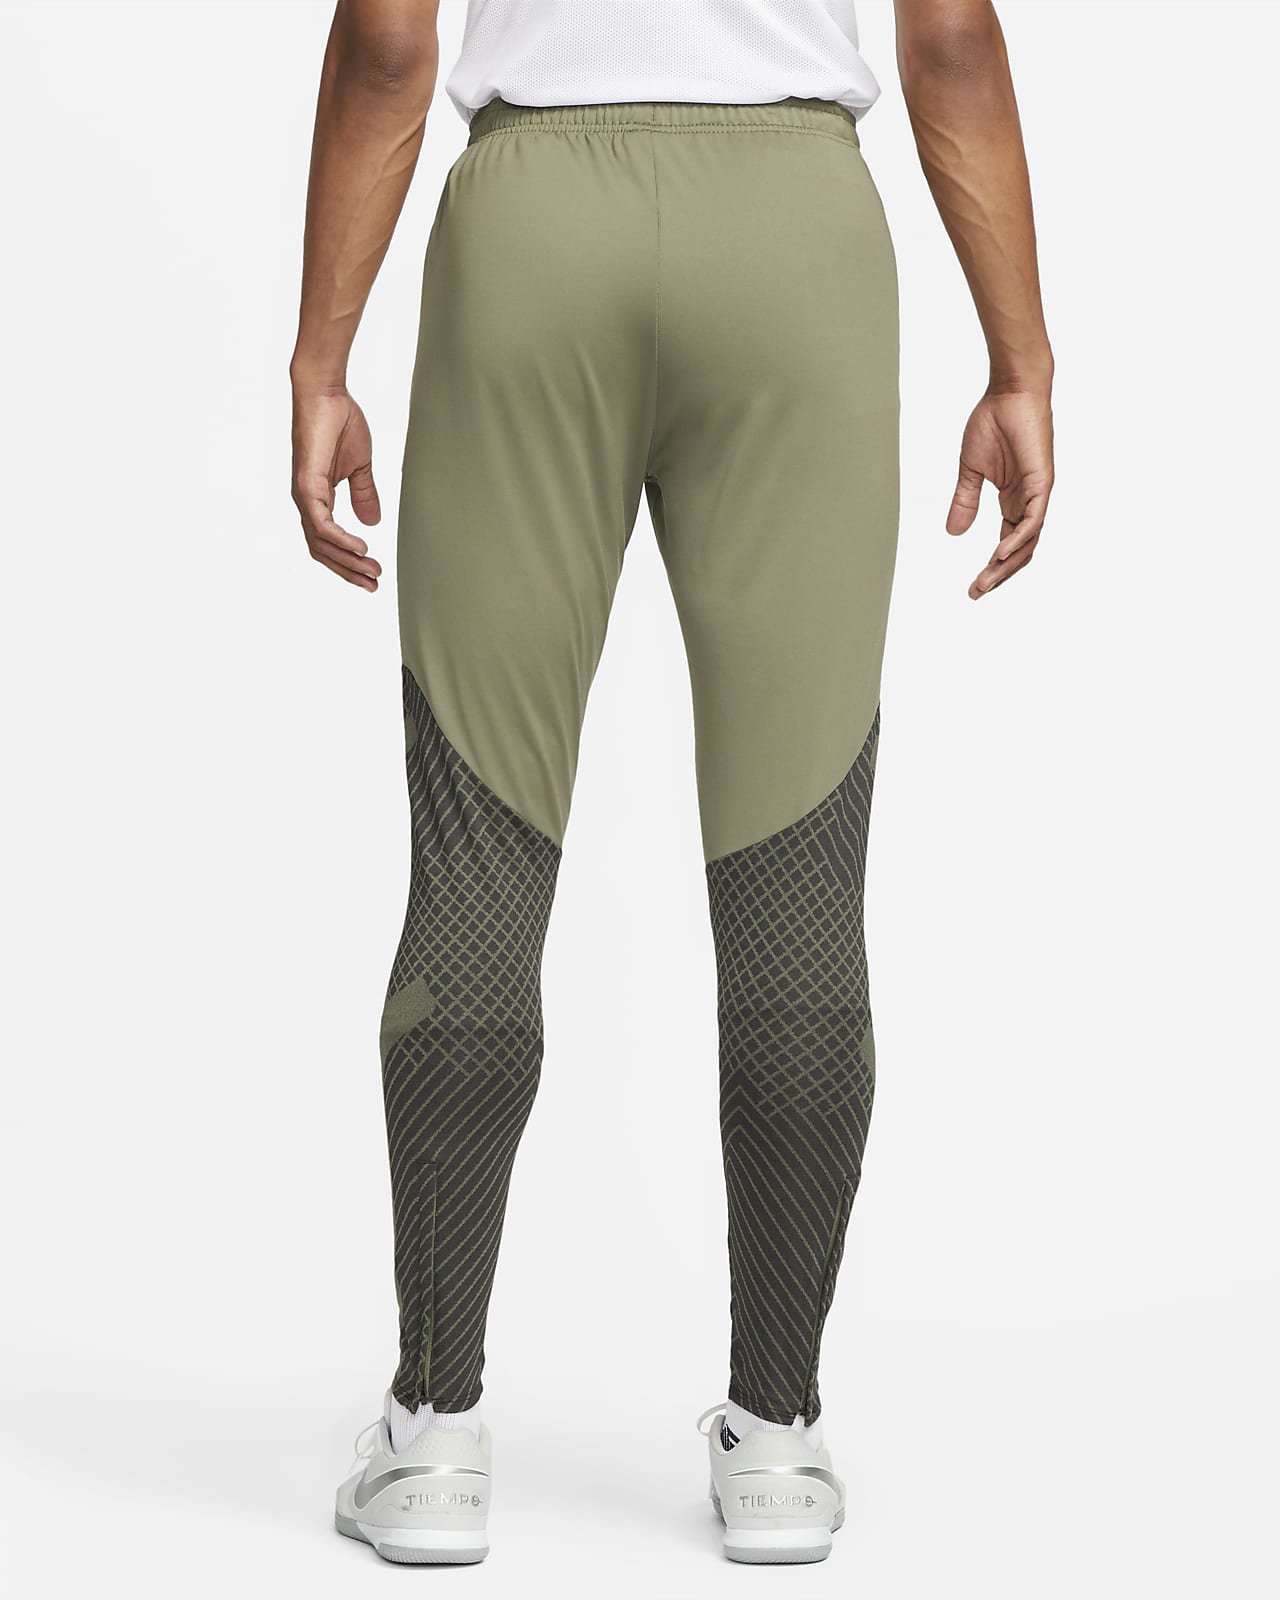 Nike LIVERPOOL FC TECH FLEECE SOCCER PANTS MEN´S Size S DD9725-612 | eBay